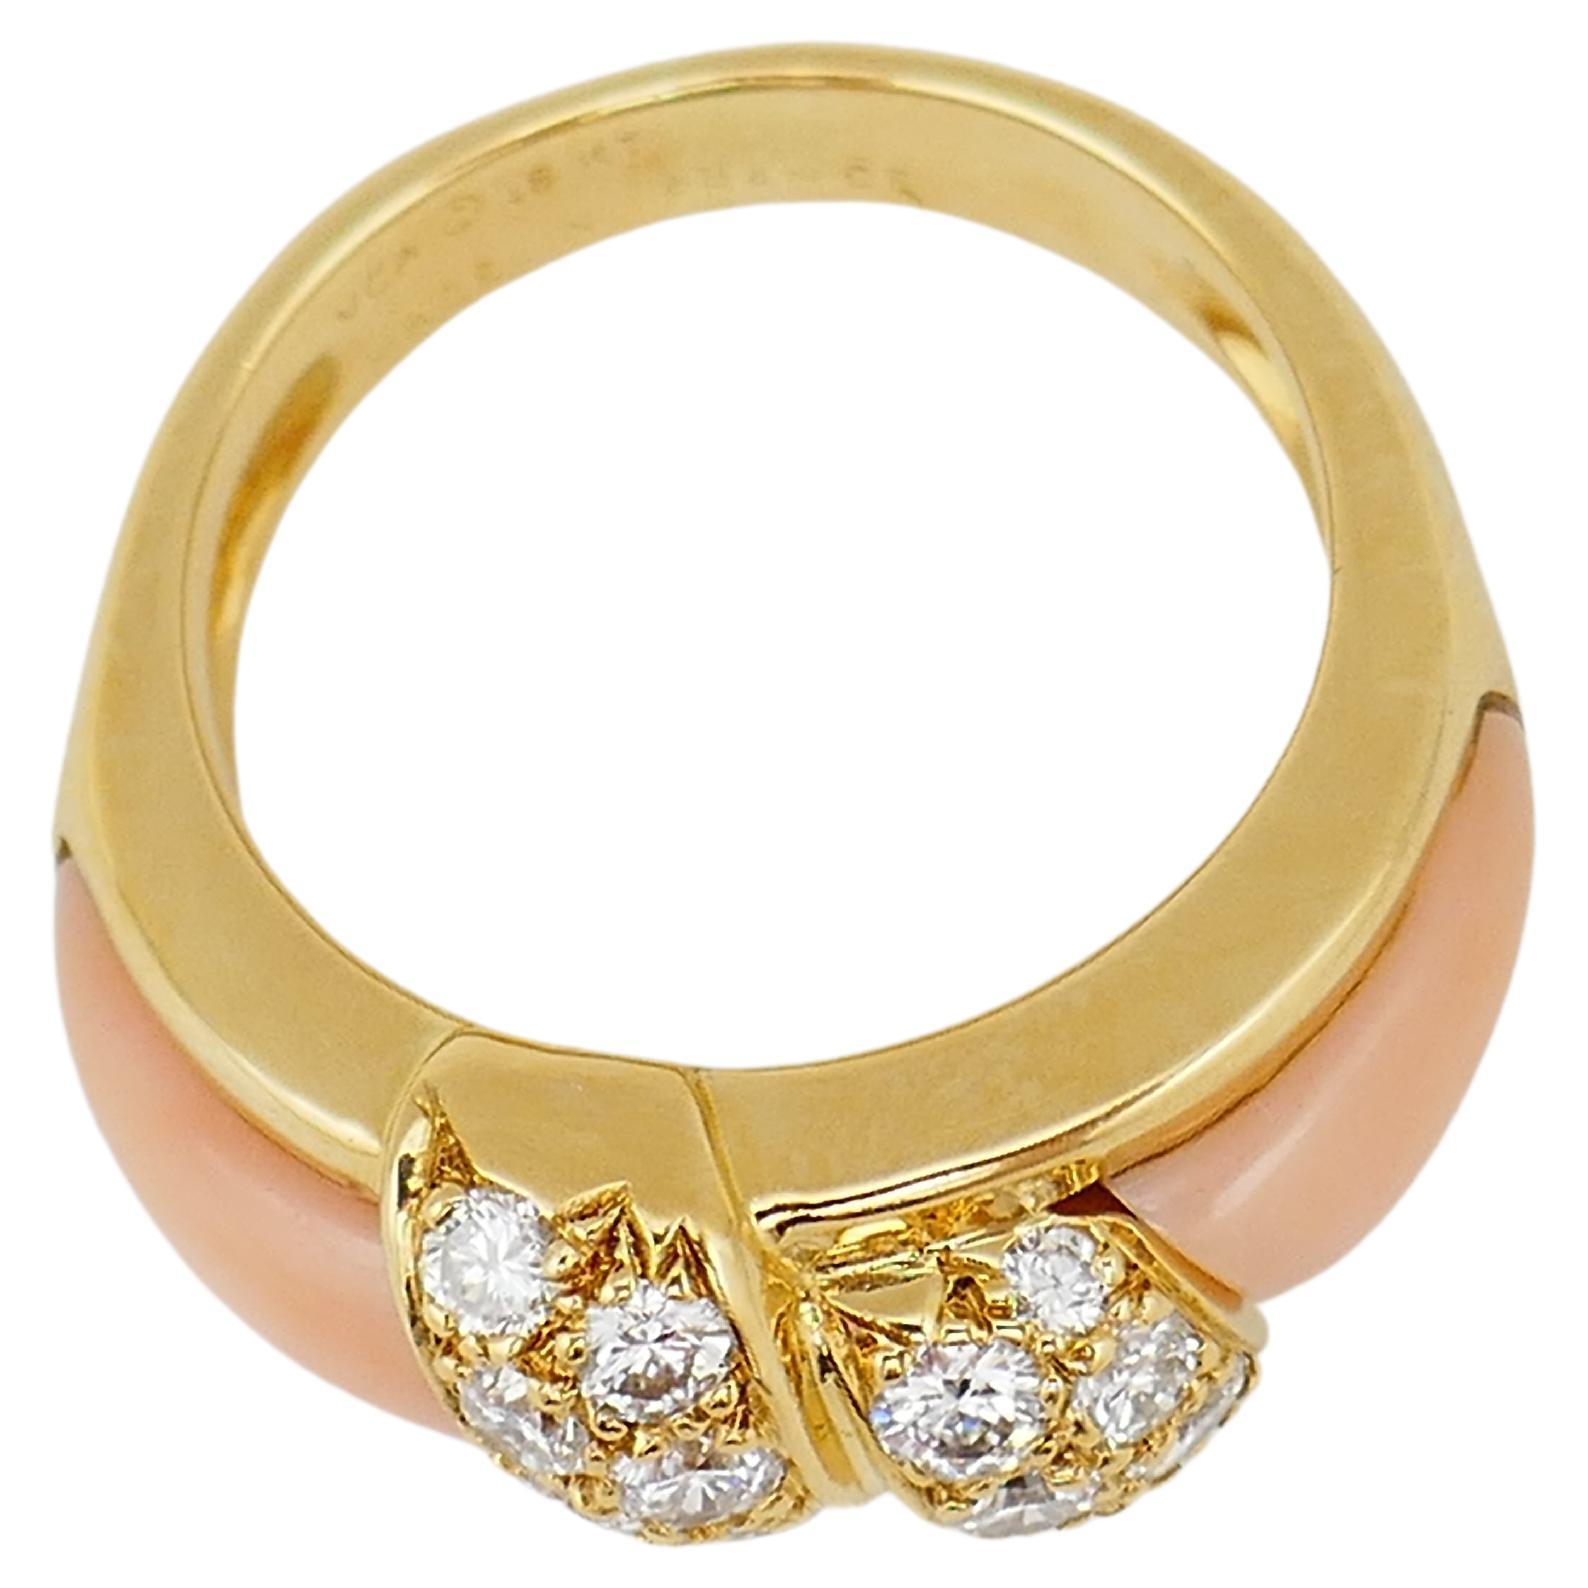 Ein prächtiger Vintage-Ring von Van Cleef & Arpels. Hergestellt aus 18 Karat Gold, Korallen und Diamanten. Die Diamanten sind rund im Brillantschliff, das Gesamtkaratgewicht beträgt 0,36 Punkte. 
Gestempelt mit VCA-Herstellermarke, französischen